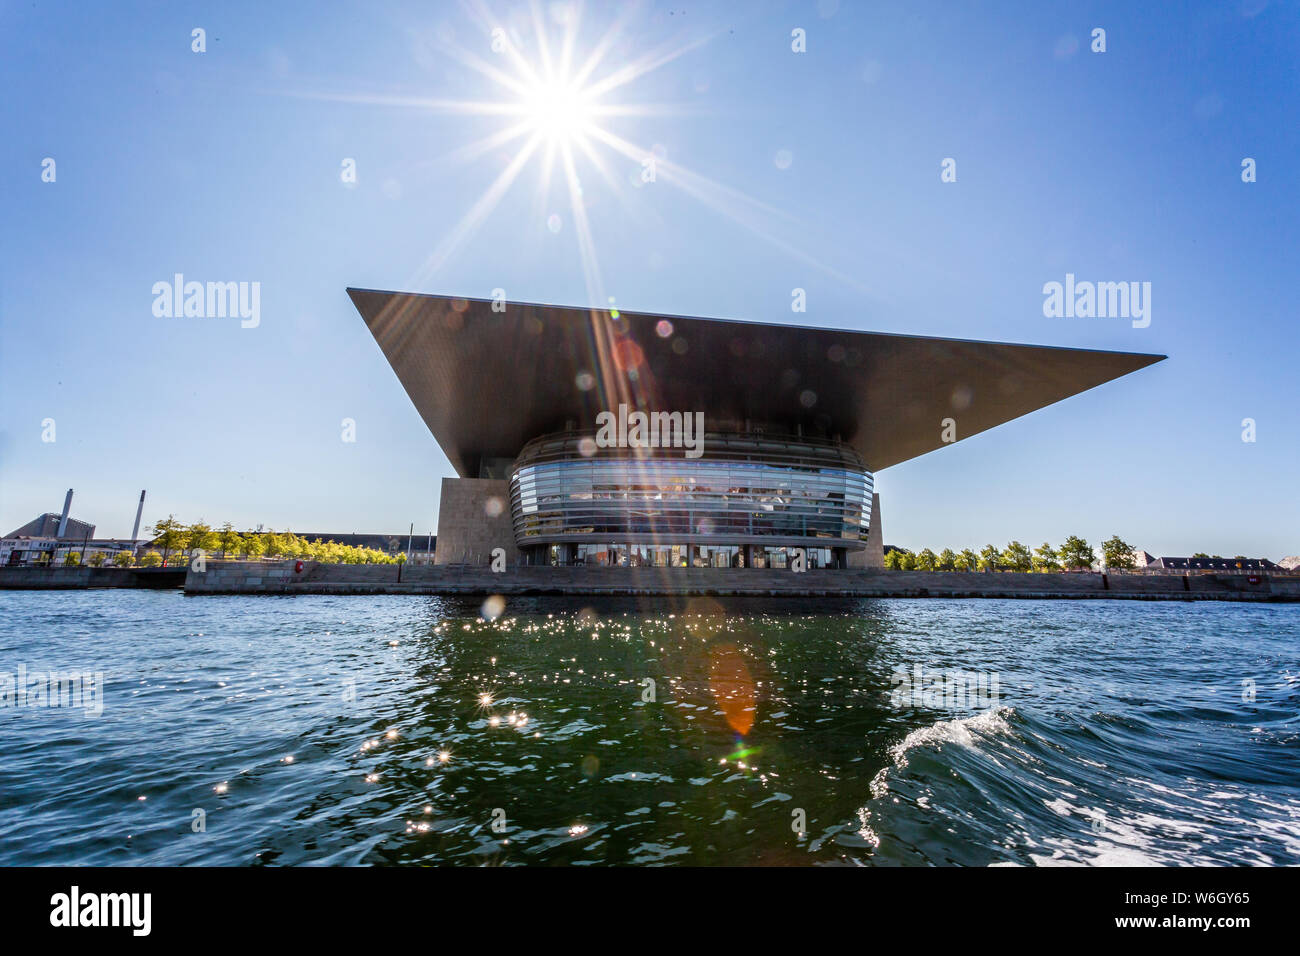 L'Opéra de Copenhague sur le bord de l'eau à Copenhague, Danemark le 18 juillet 2019 Banque D'Images